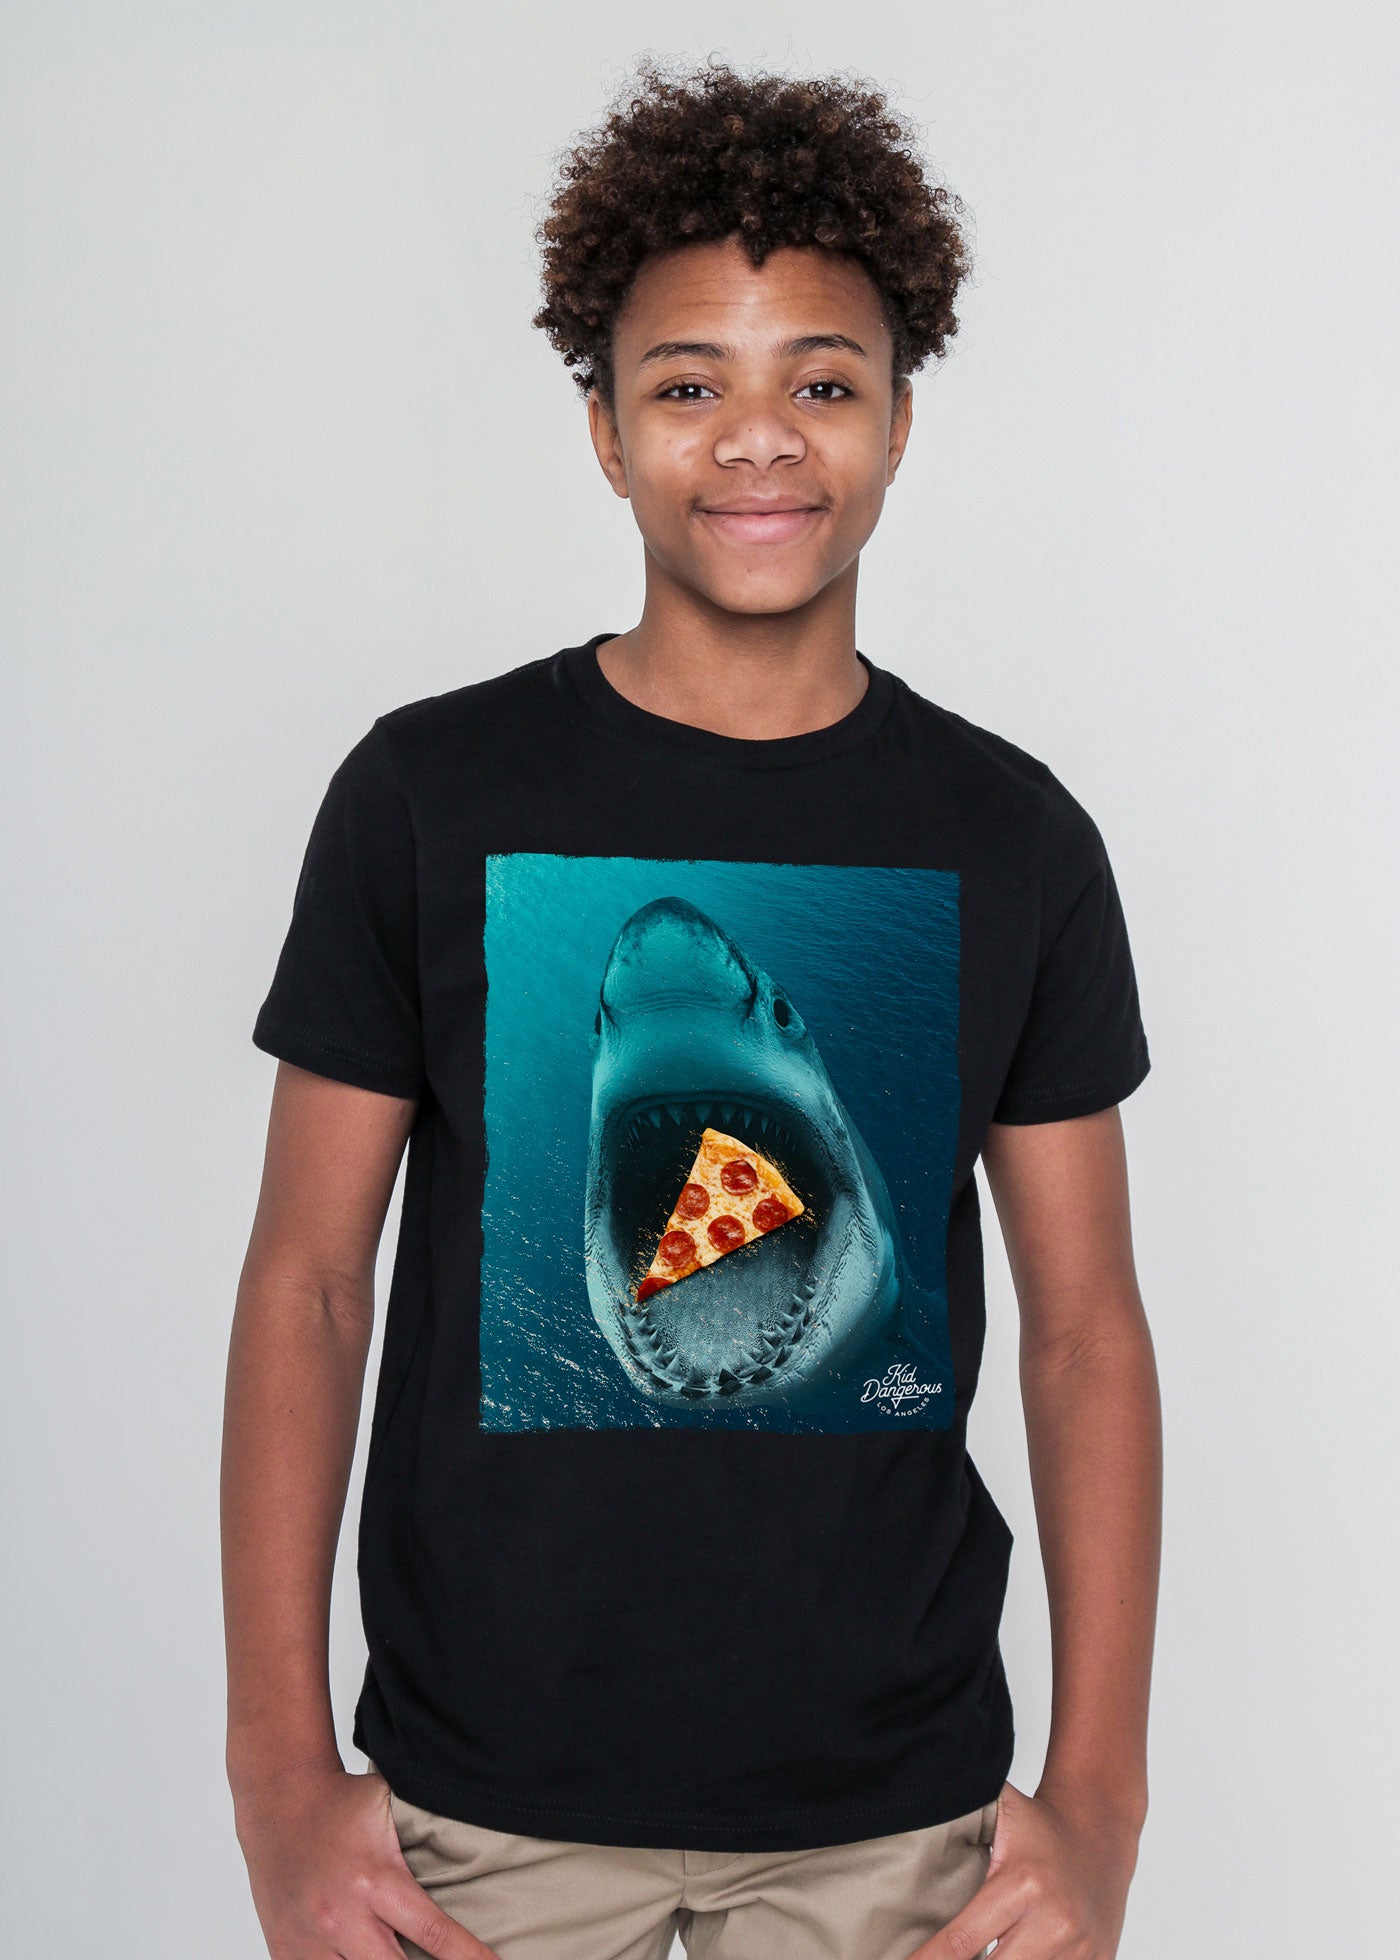 https://cdn.shopify.com/s/files/1/1773/7639/products/Shark-Pizza-Kids-Black-T-Shirt.jpg?v=1615344134